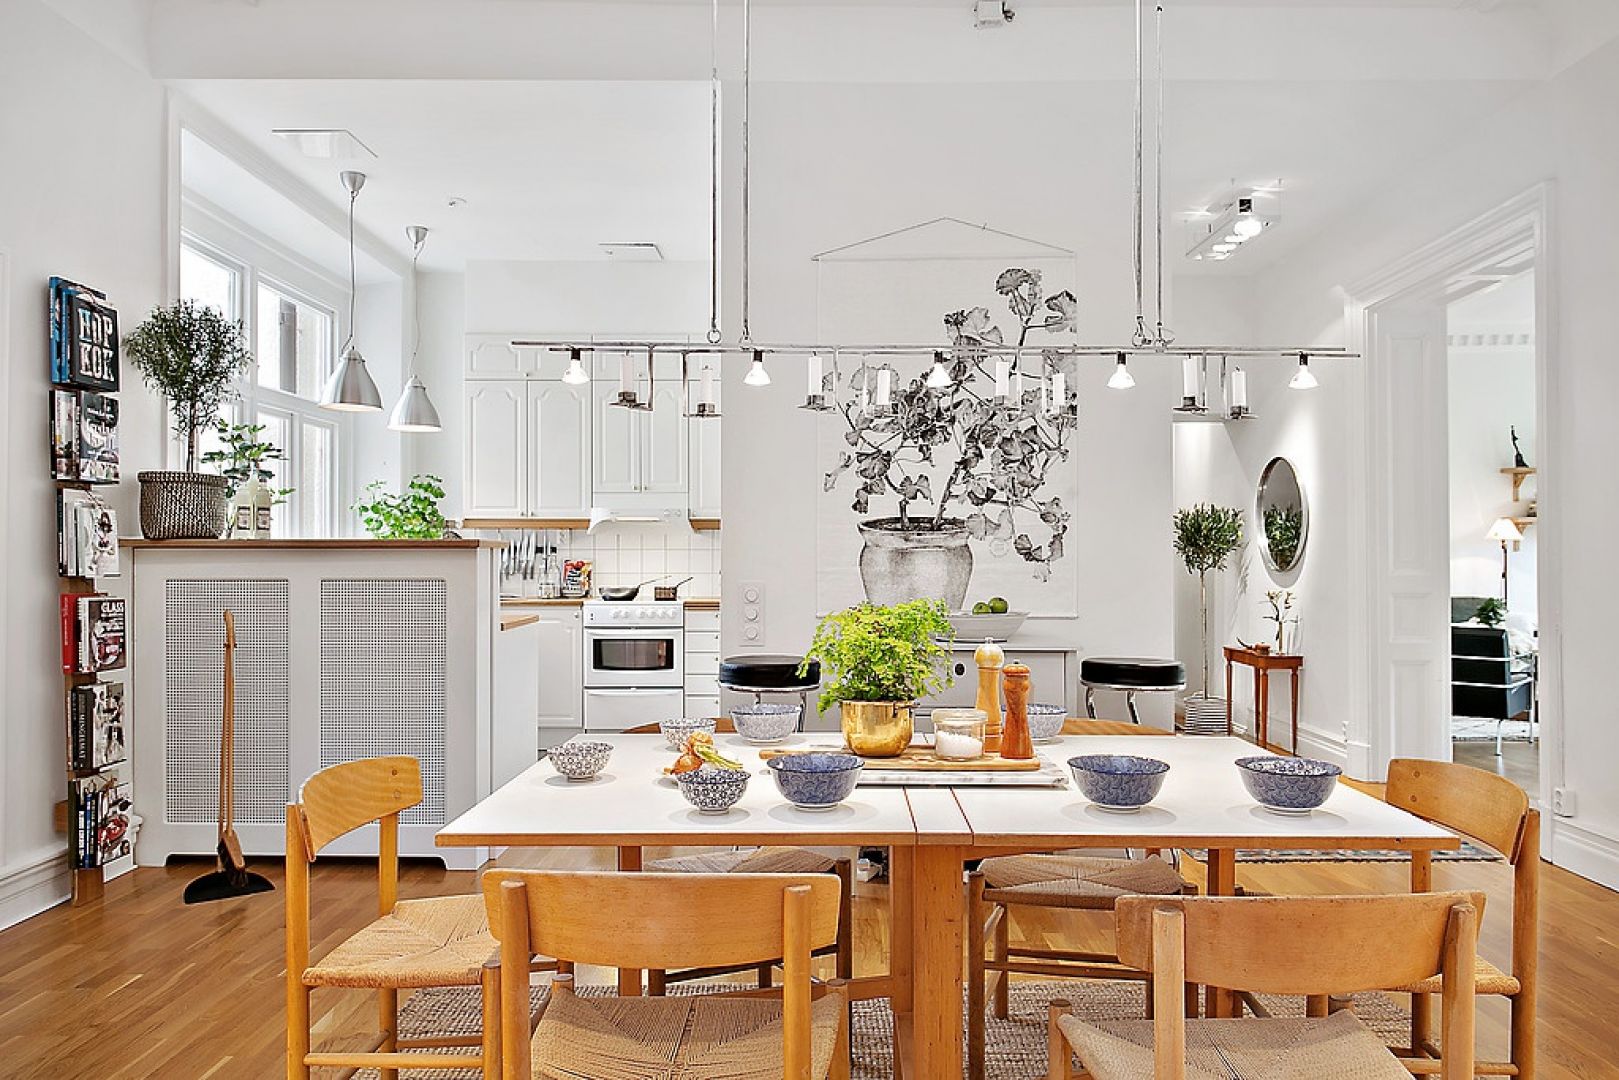 Inspirowane skandynawskim stylem wnętrze przyciąga elegancką prostotą. Przestronną jadalnię od kuchni oddziela stylowy barek. Fot.
Alvhem Makleri.